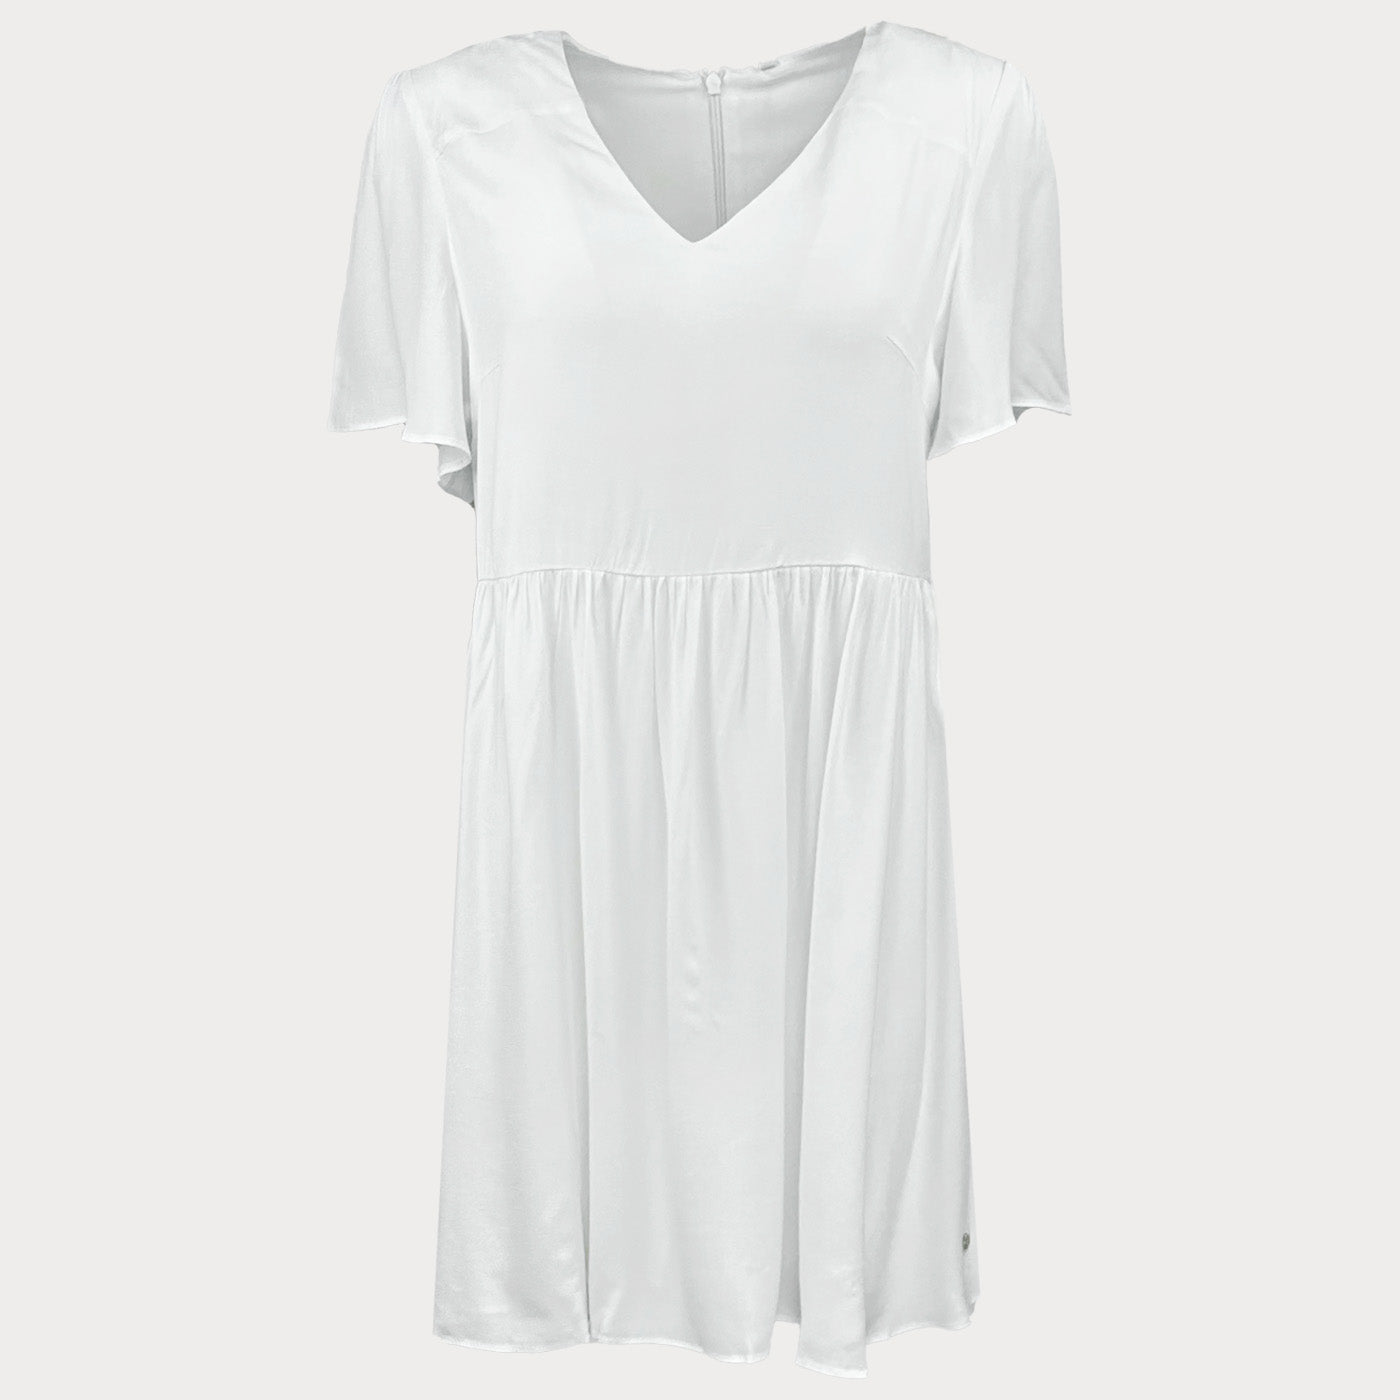 Дамска ежедневна рокля PEPE JEANS, в бял цвят, лека материя със средна дължина, среден ръкав. Размер М 